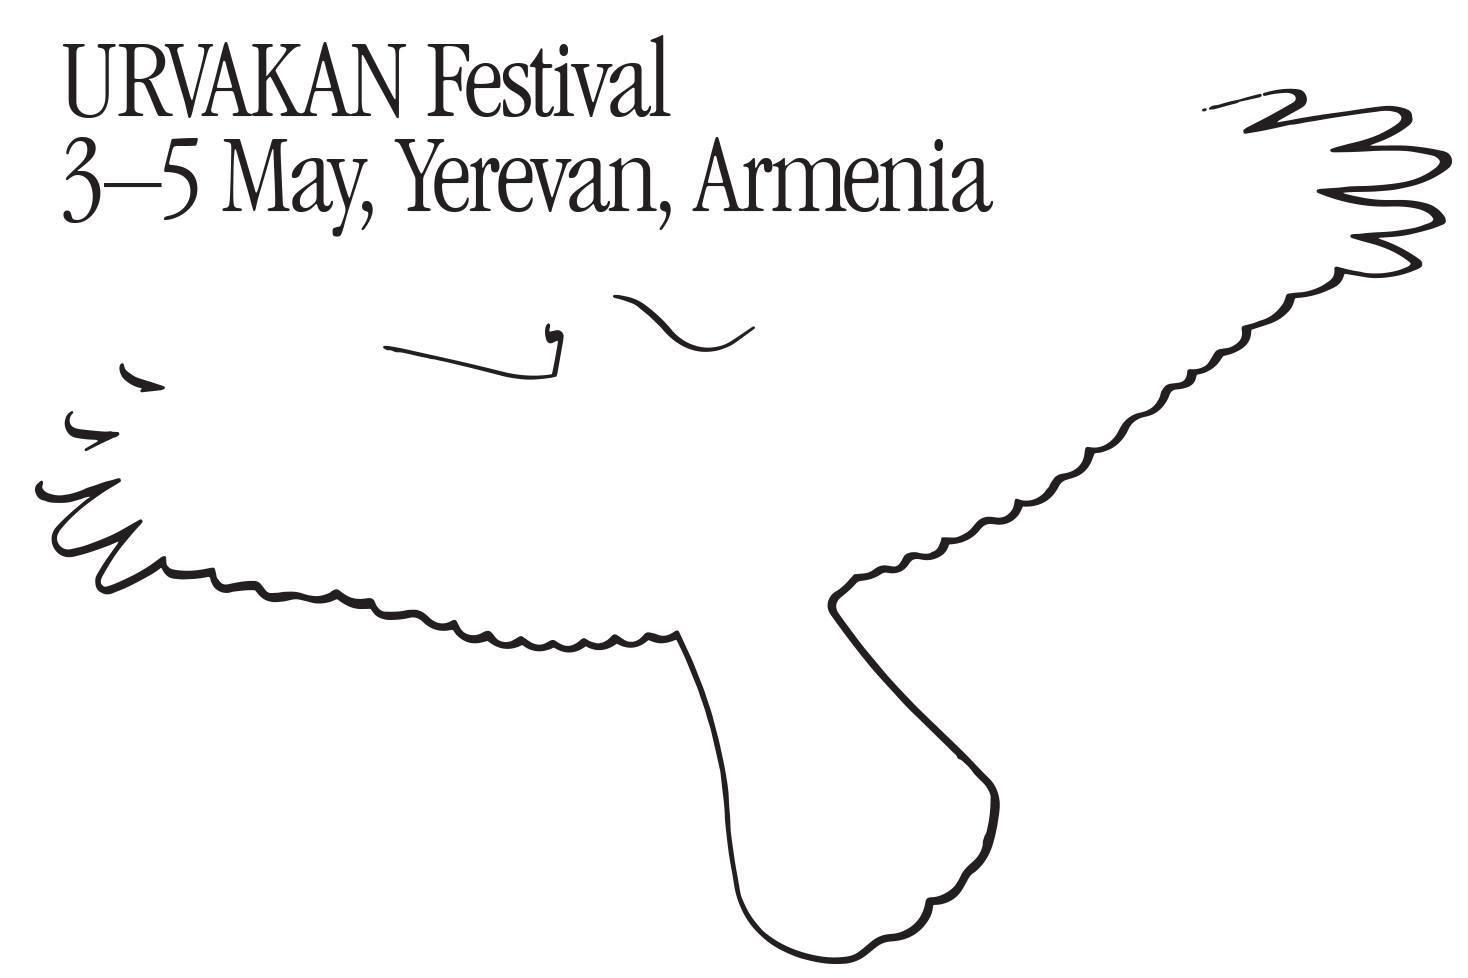 Երևանն առաջին անգամ կհյուրընկալի ժամանակակից մշակույթի և նորագույն երաժշտական ձևաչափերի «ՈՒՐՎԱԿԱՆ» միջազգային փառատոնը